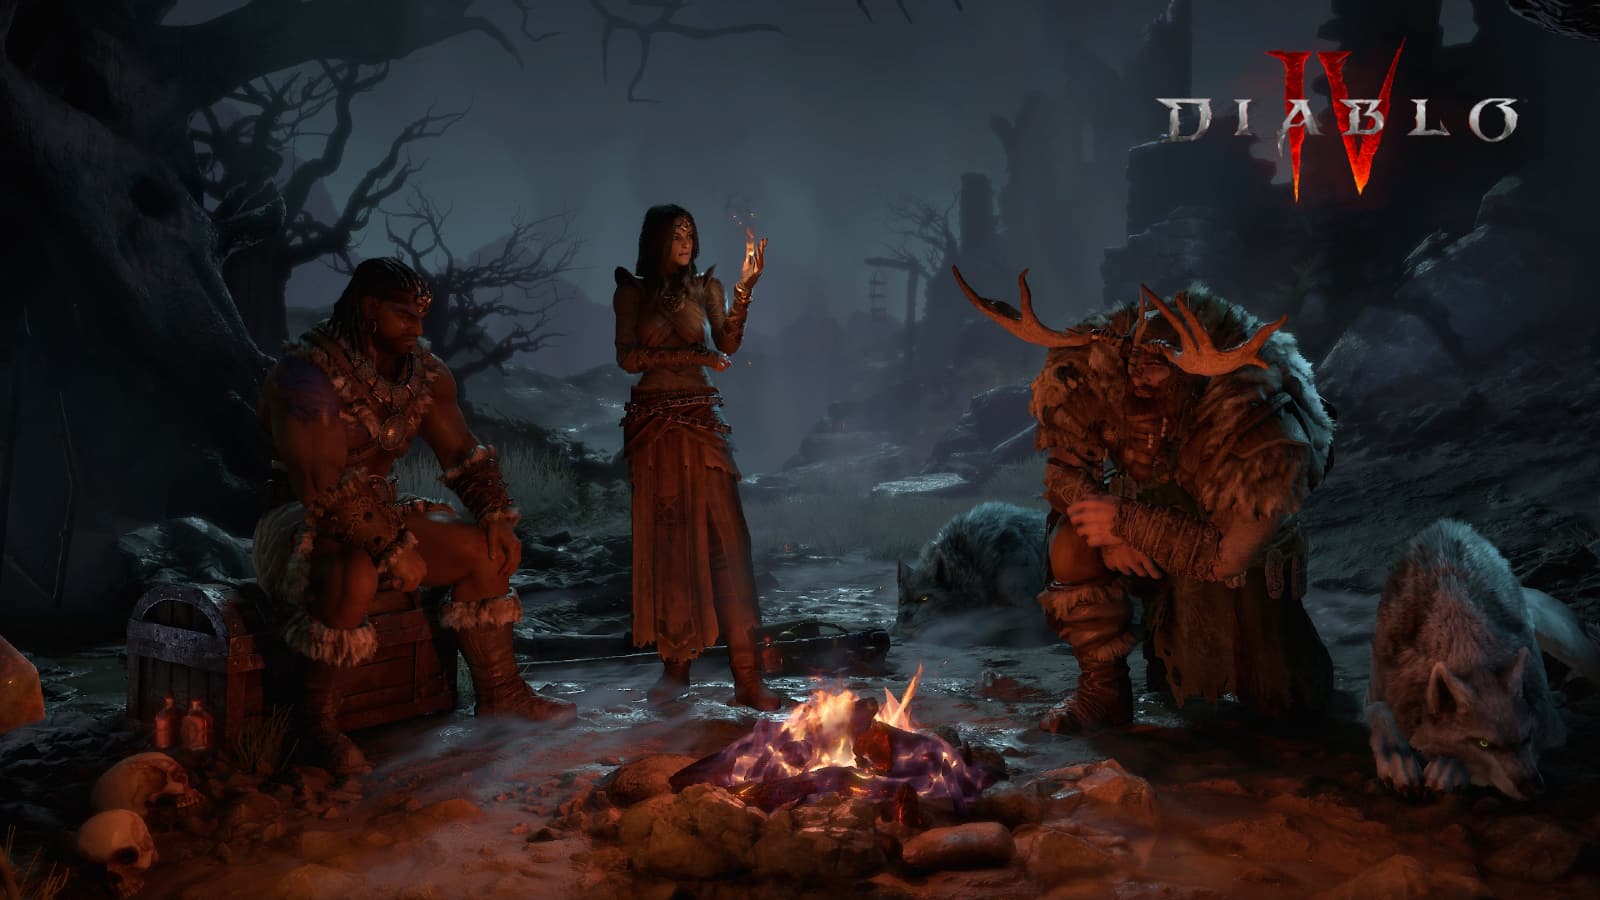 Diablo 4 druid büyücü barbar kamp ateşinin etrafında otur